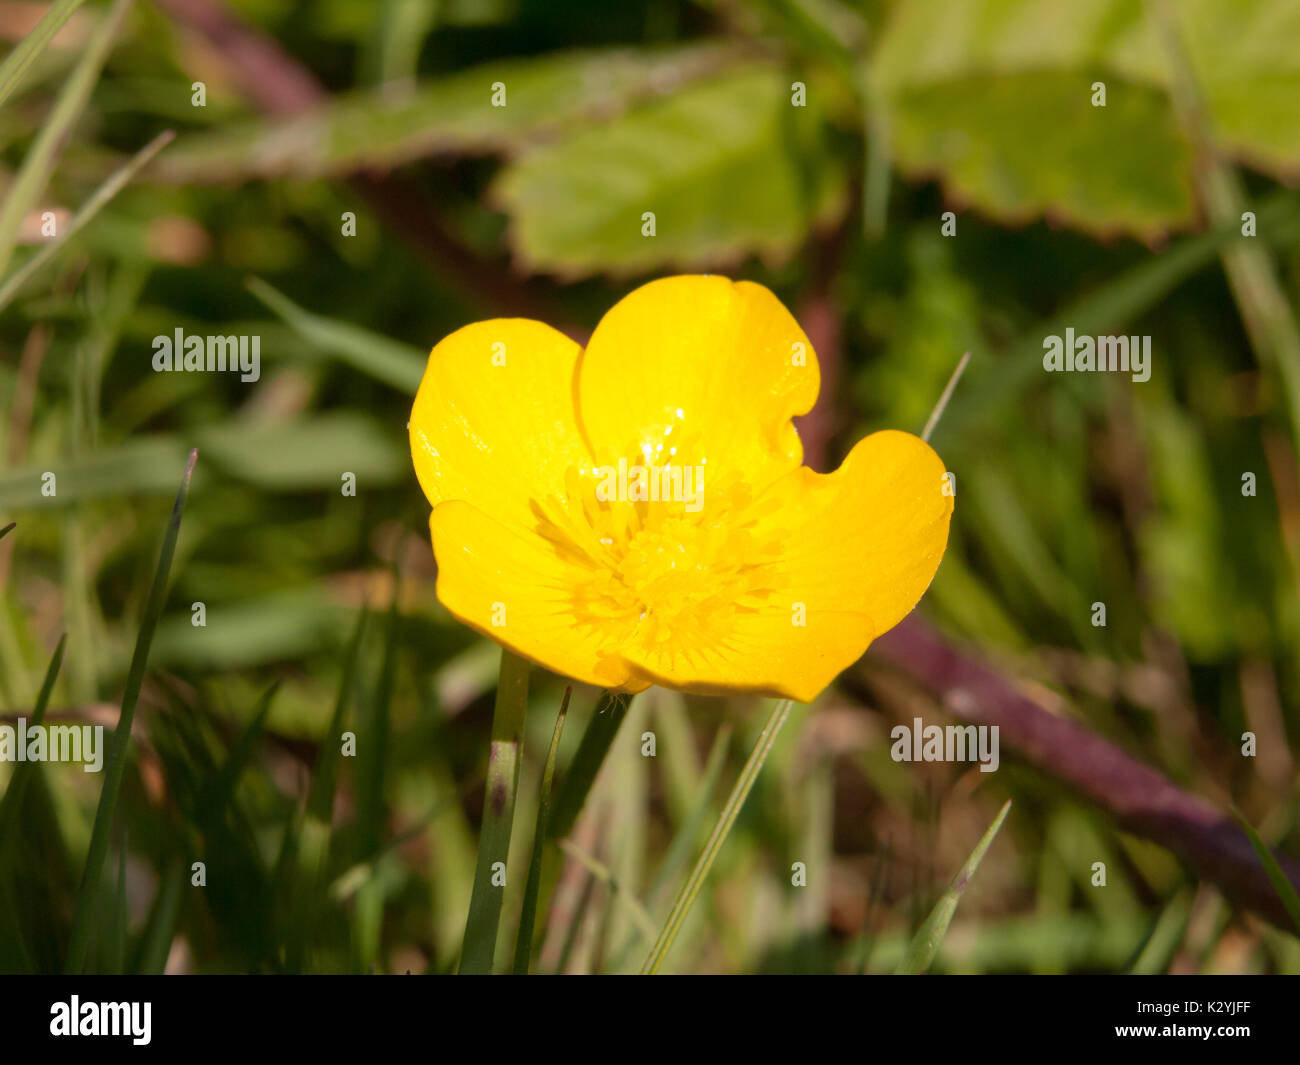 close up single yellow buttercup flower petals Ranunculus; England; UK Stock Photo